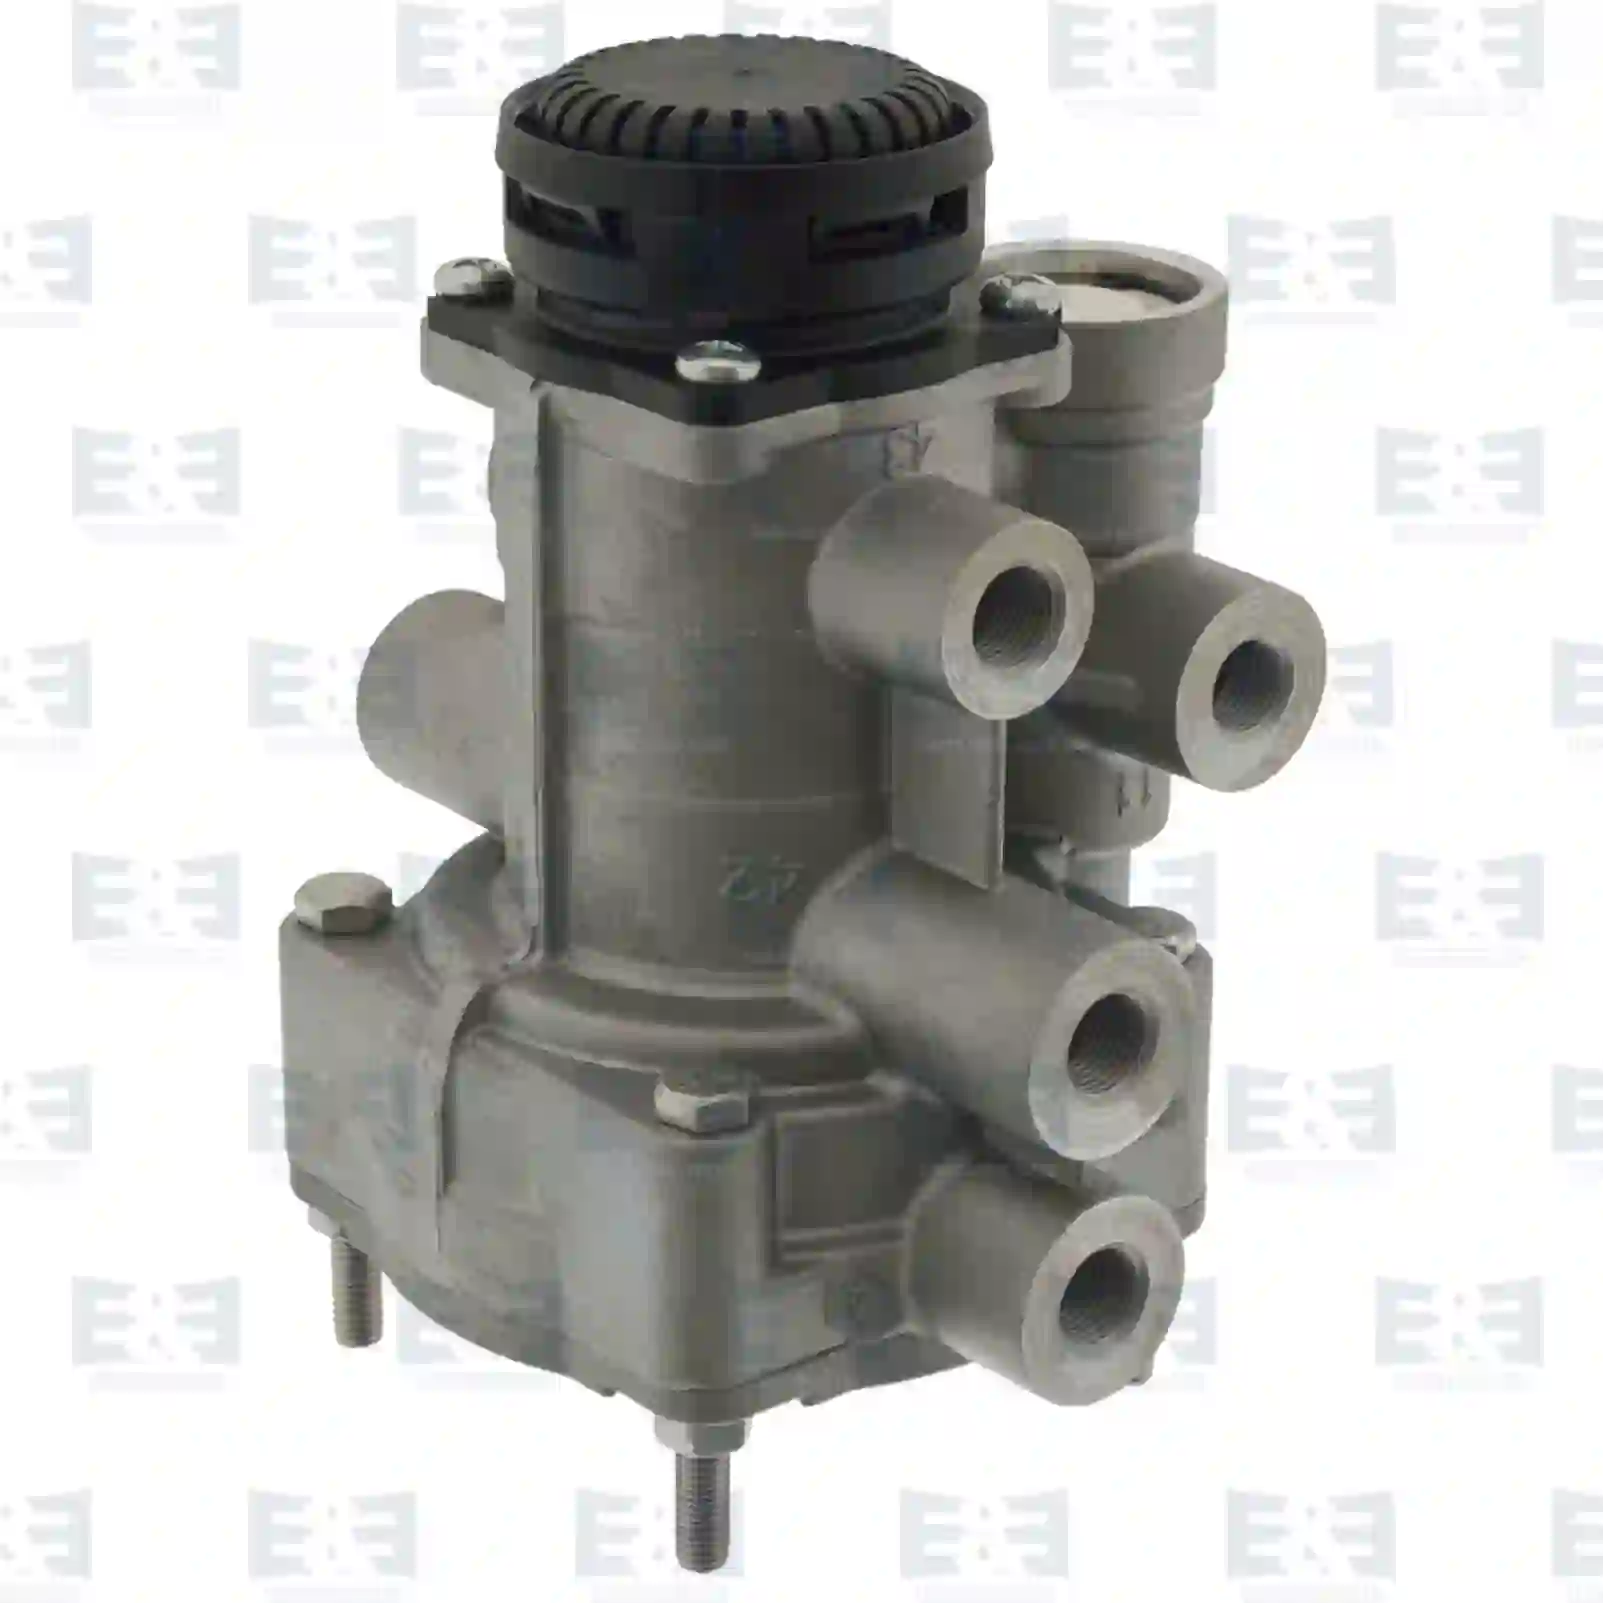  Trailer control valve || E&E Truck Spare Parts | Truck Spare Parts, Auotomotive Spare Parts